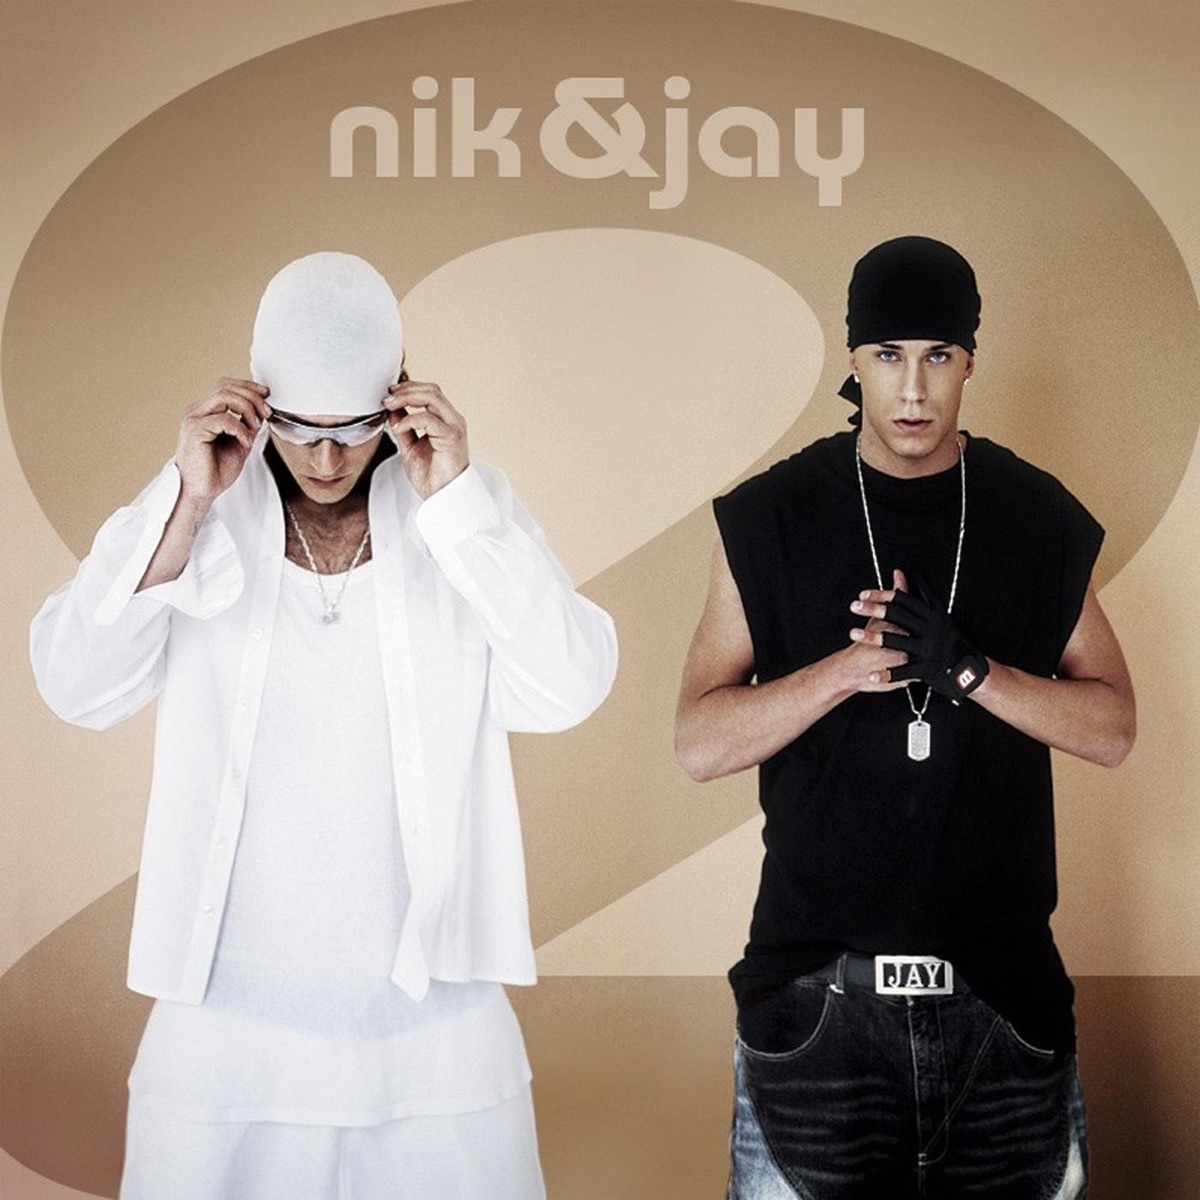 Krydret Opdater Certifikat ‎Nik & Jay 2 by Nik & Jay on Apple Music